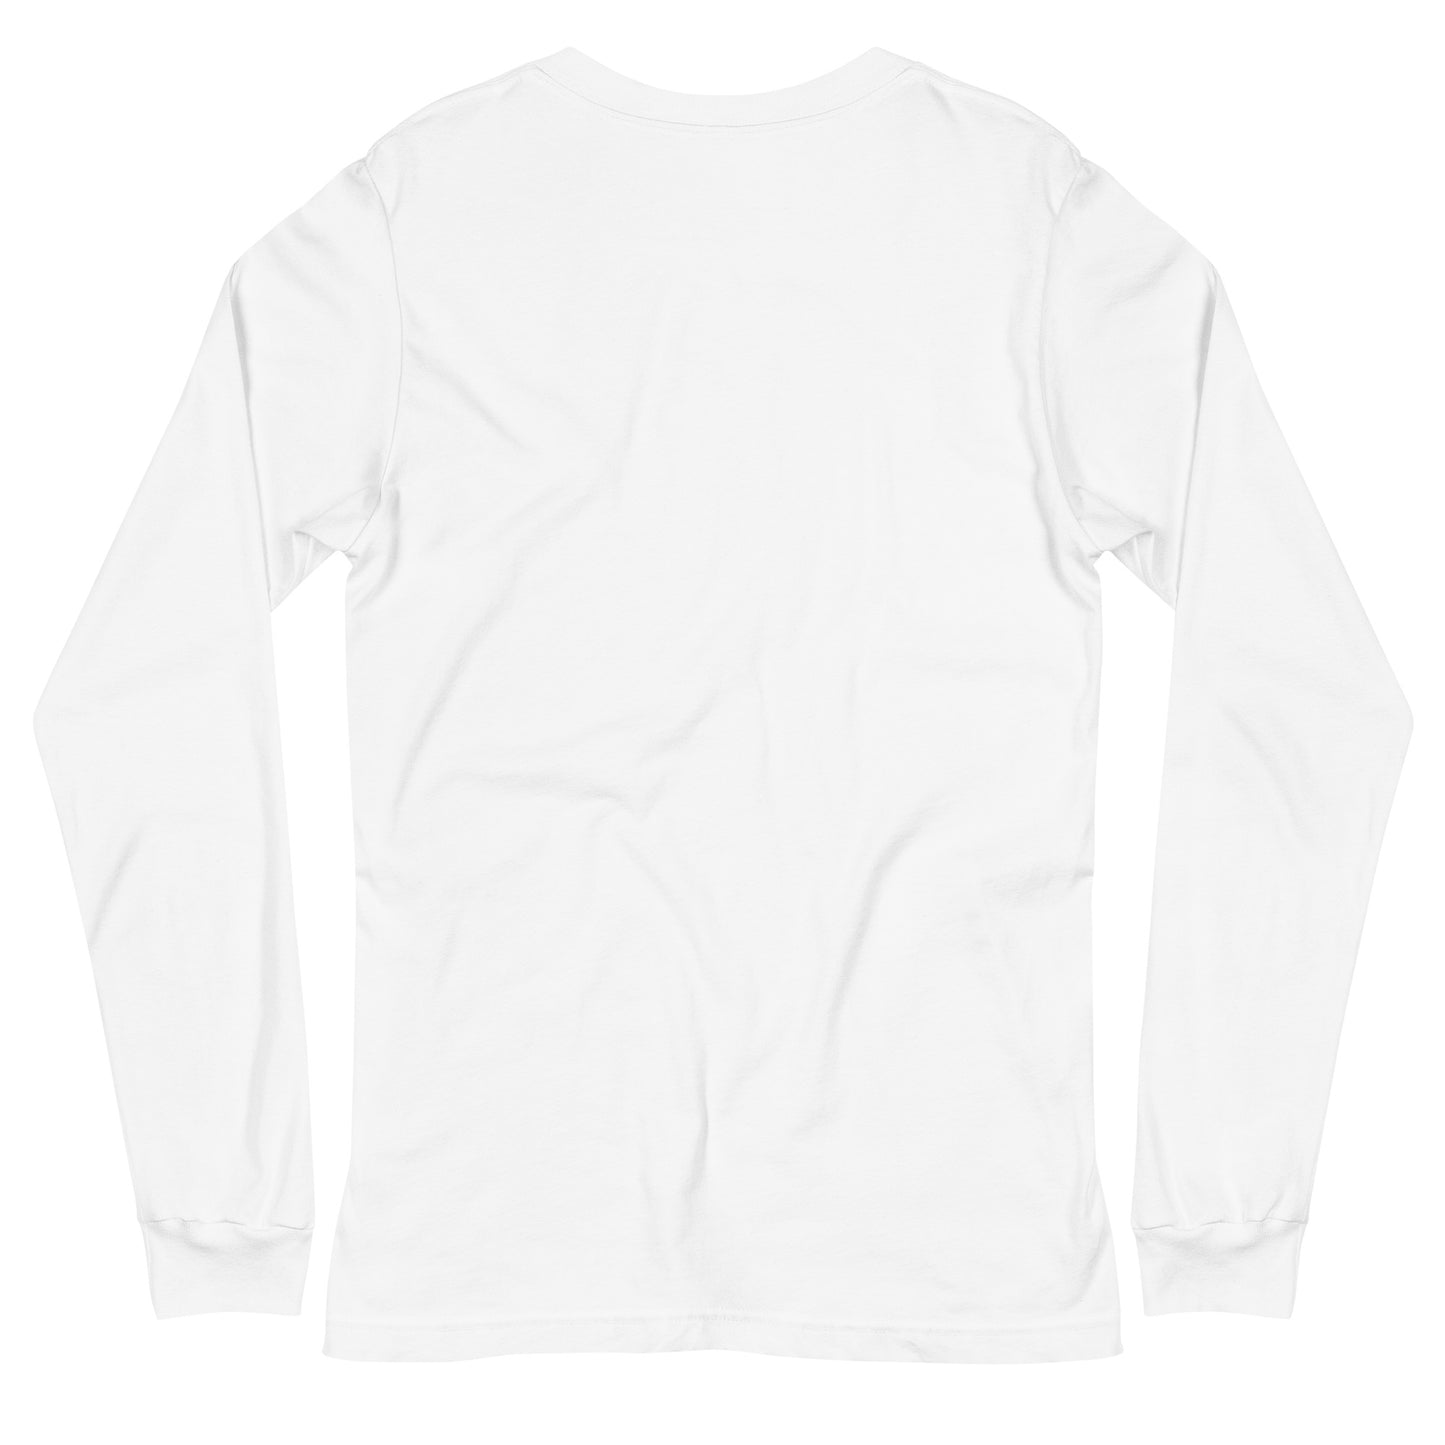 Menkrav Initiate Long Sleeve T-shirt white